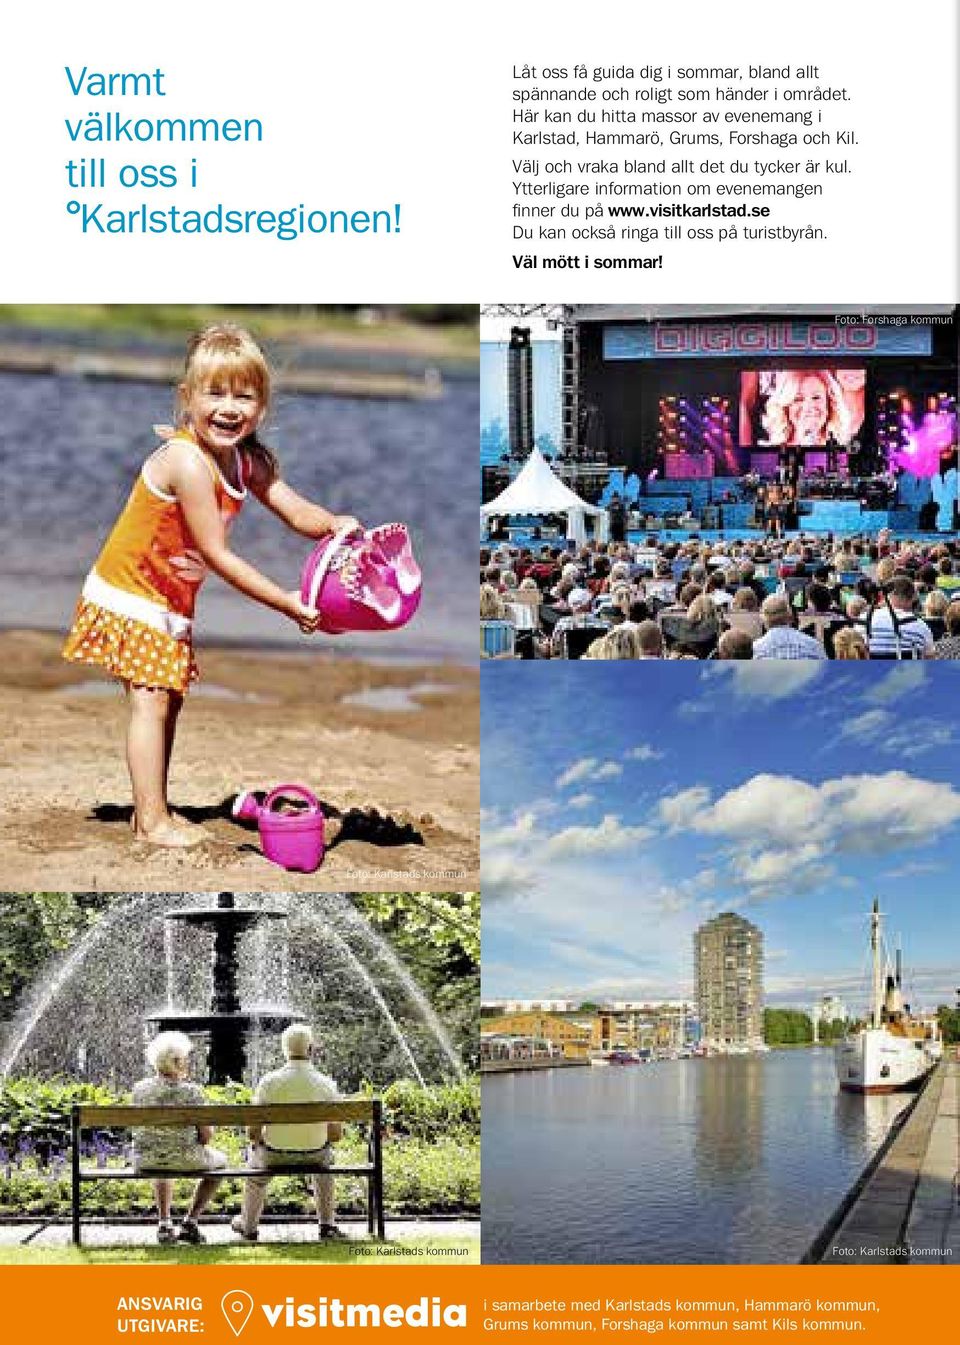 Ytterligare information om evenemangen finner du på www.visitkarlstad.se Du kan också ringa till oss på turistbyrån. Väl mött i sommar!